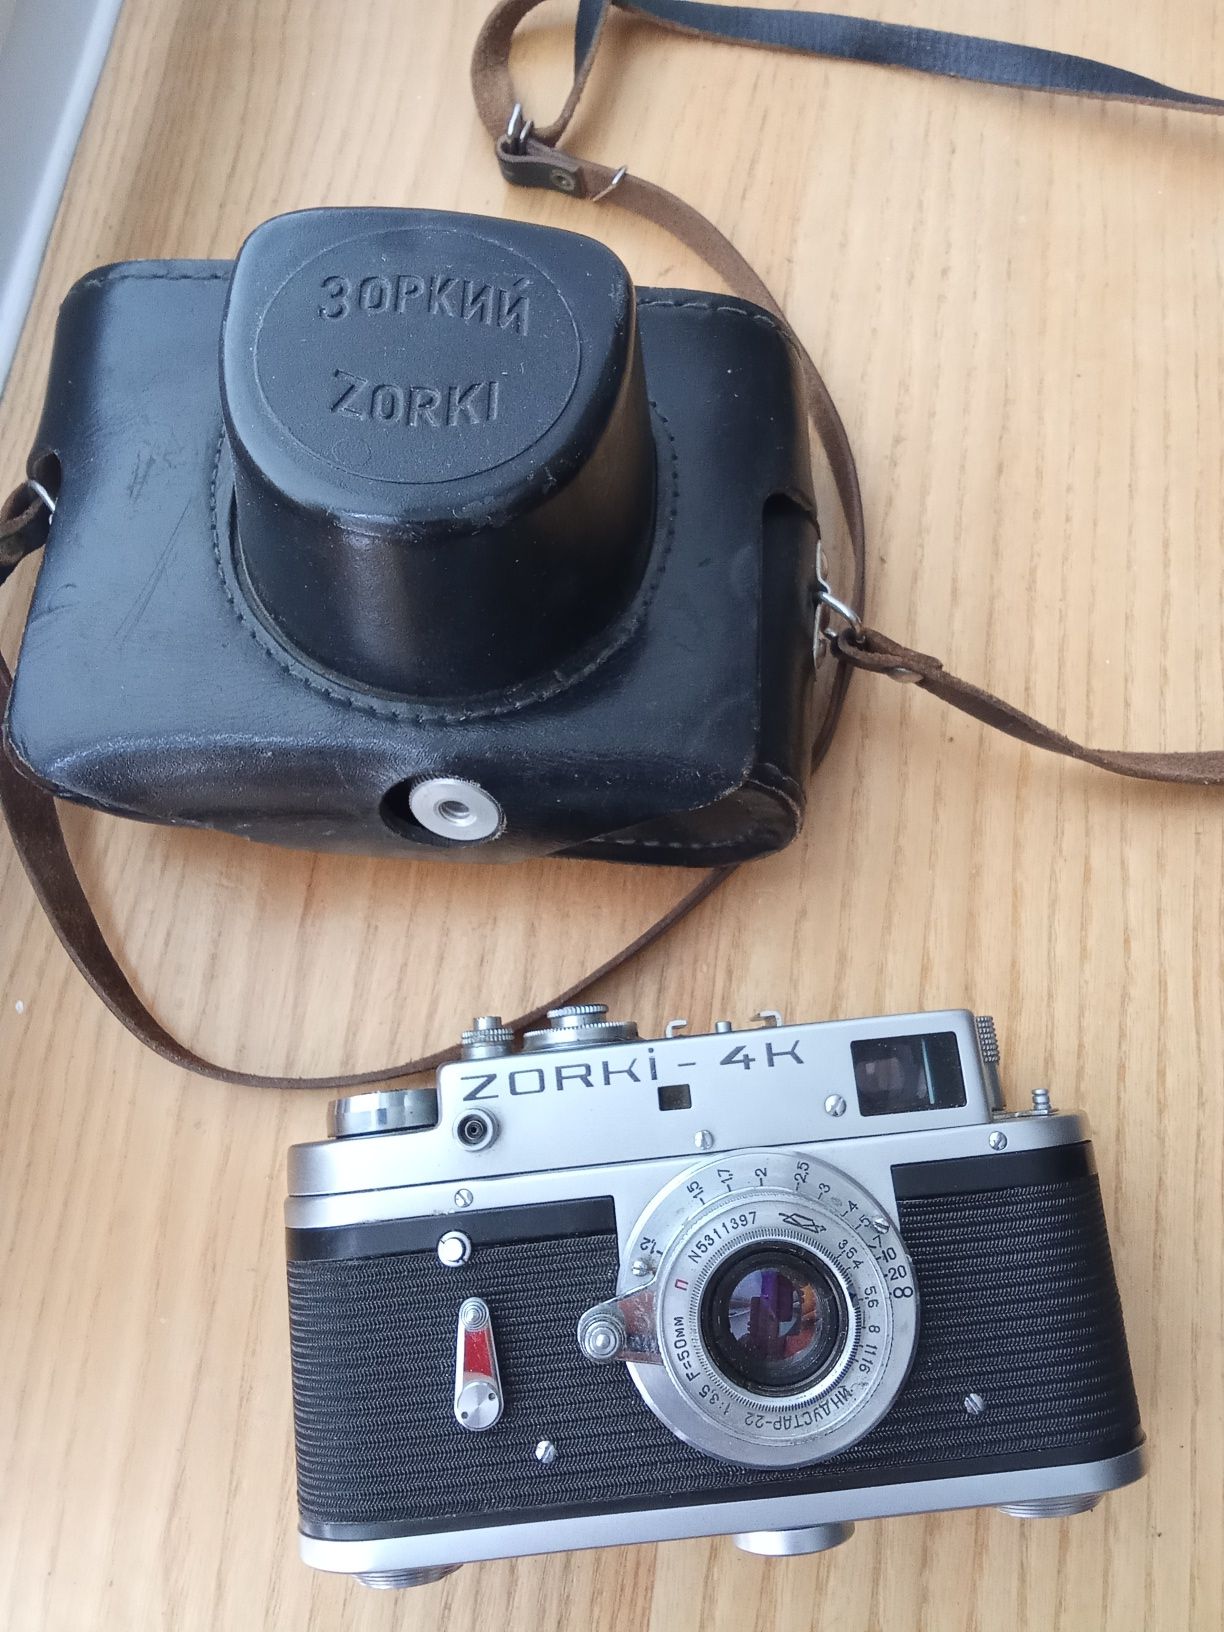 analogowy aparat fotograficzny zorki 4kl  obiektywem Industa ZSRR